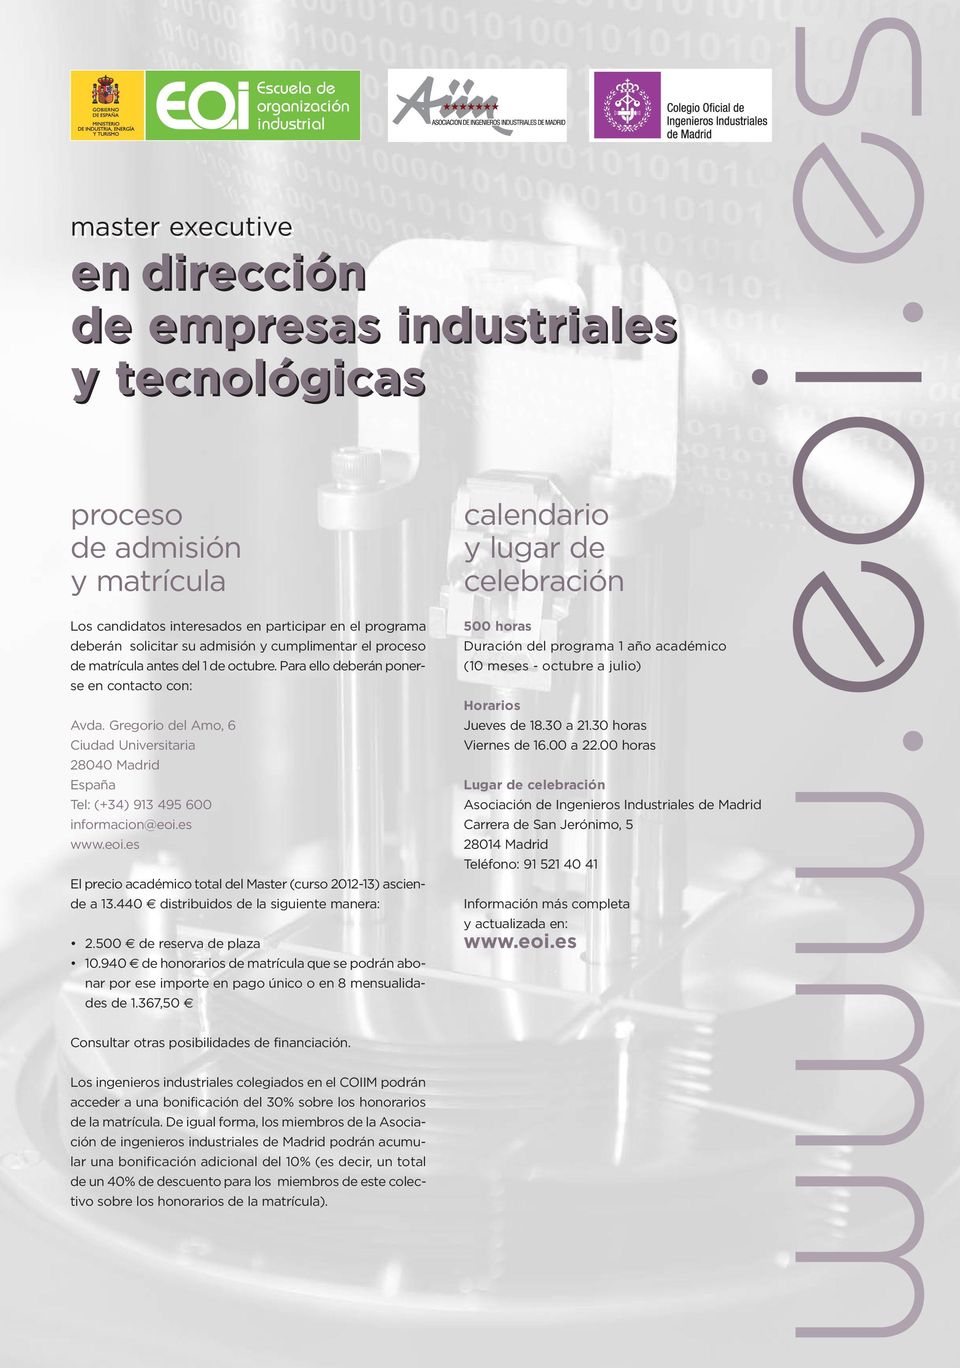 es www.eoi.es Escuela de organización industrial en dirección de empresas industriales y tecnológicas El precio académico total del Master (curso 2012-13) asciende a 13.